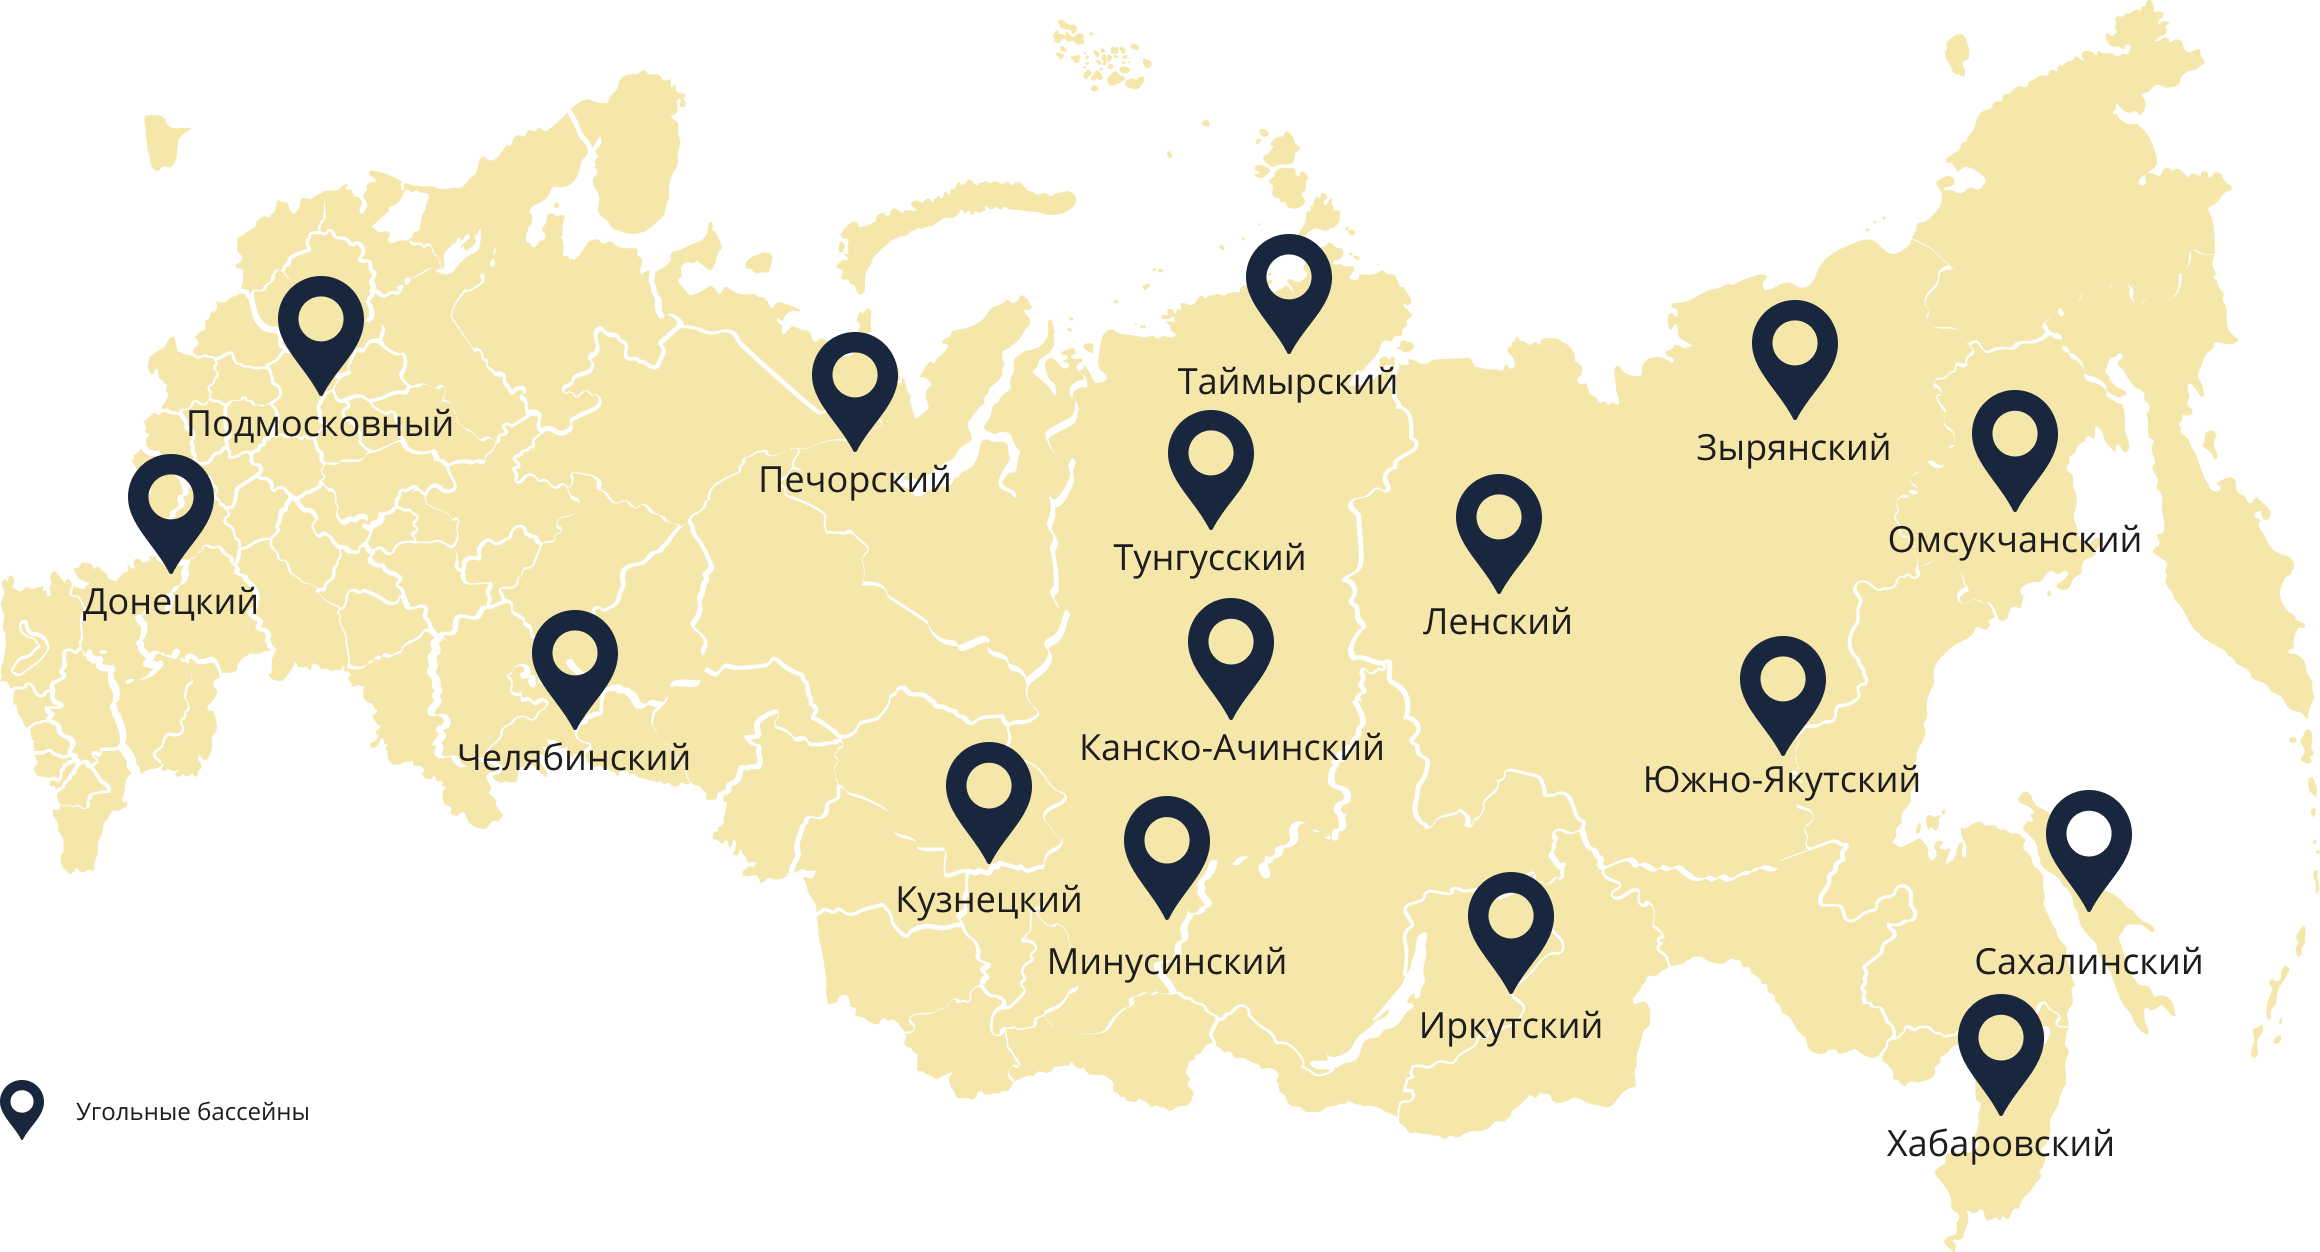 Месторождения каменного угля в России на карте. Крупные месторождения угля в России на карте. Крупнейшие месторождения каменного угля в России на карте. Крупнейшие бассейны угля в России на карте.